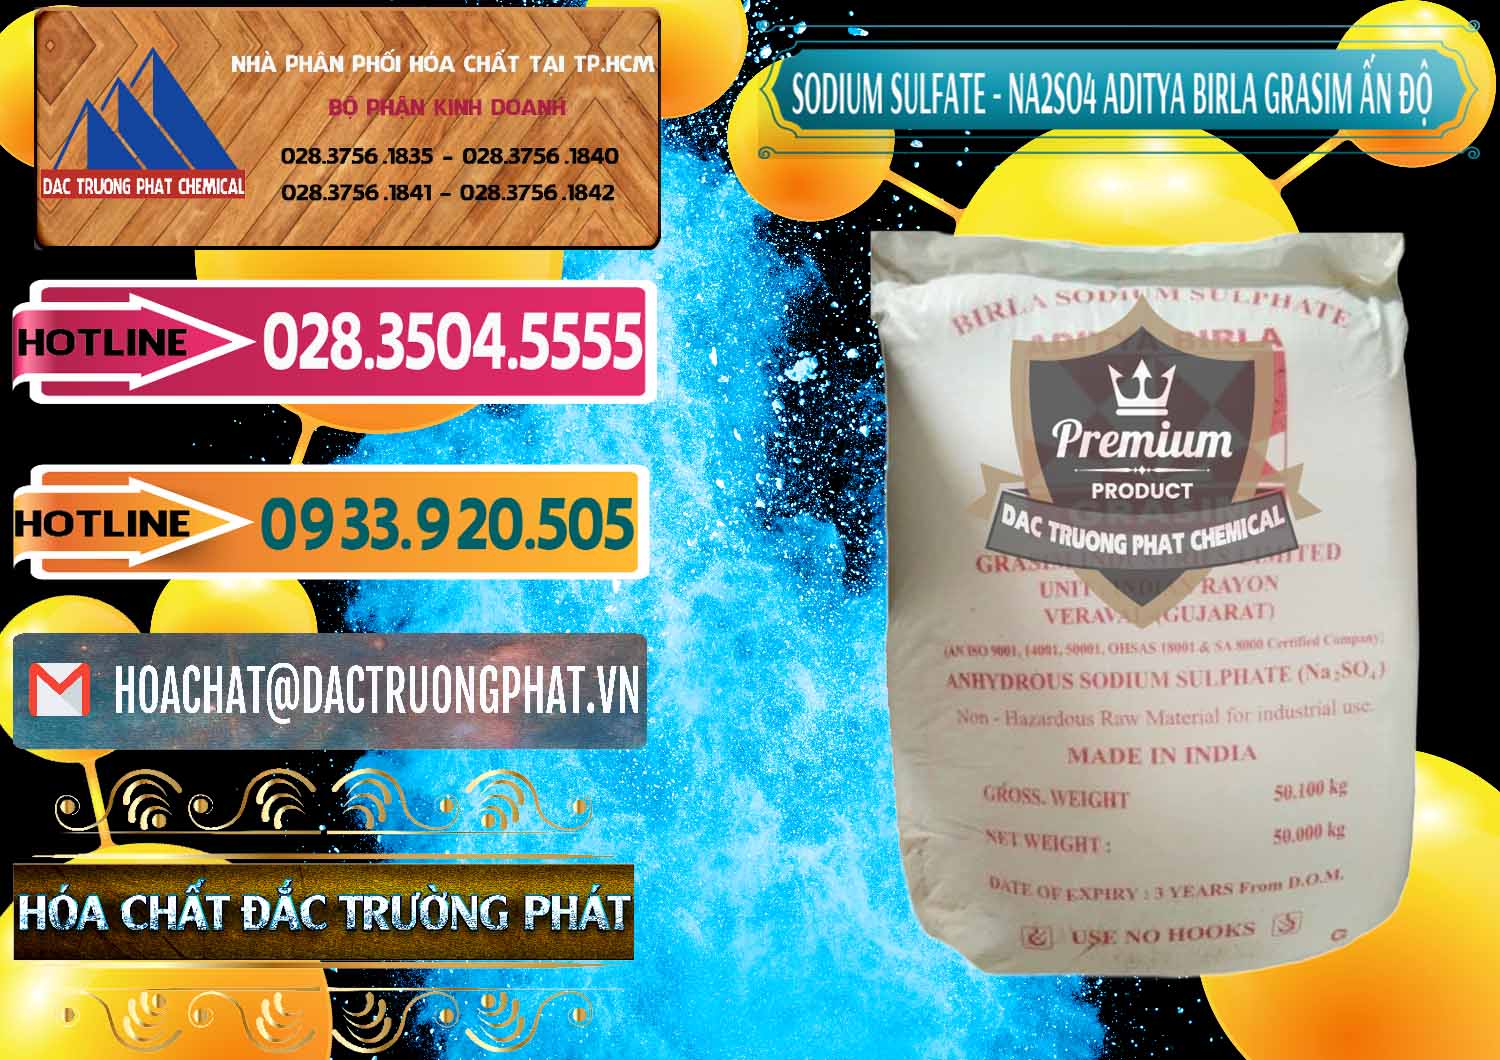 Đơn vị chuyên phân phối ( bán ) Sodium Sulphate - Muối Sunfat Na2SO4 Grasim Ấn Độ India - 0356 - Cty cung cấp _ nhập khẩu hóa chất tại TP.HCM - dactruongphat.vn